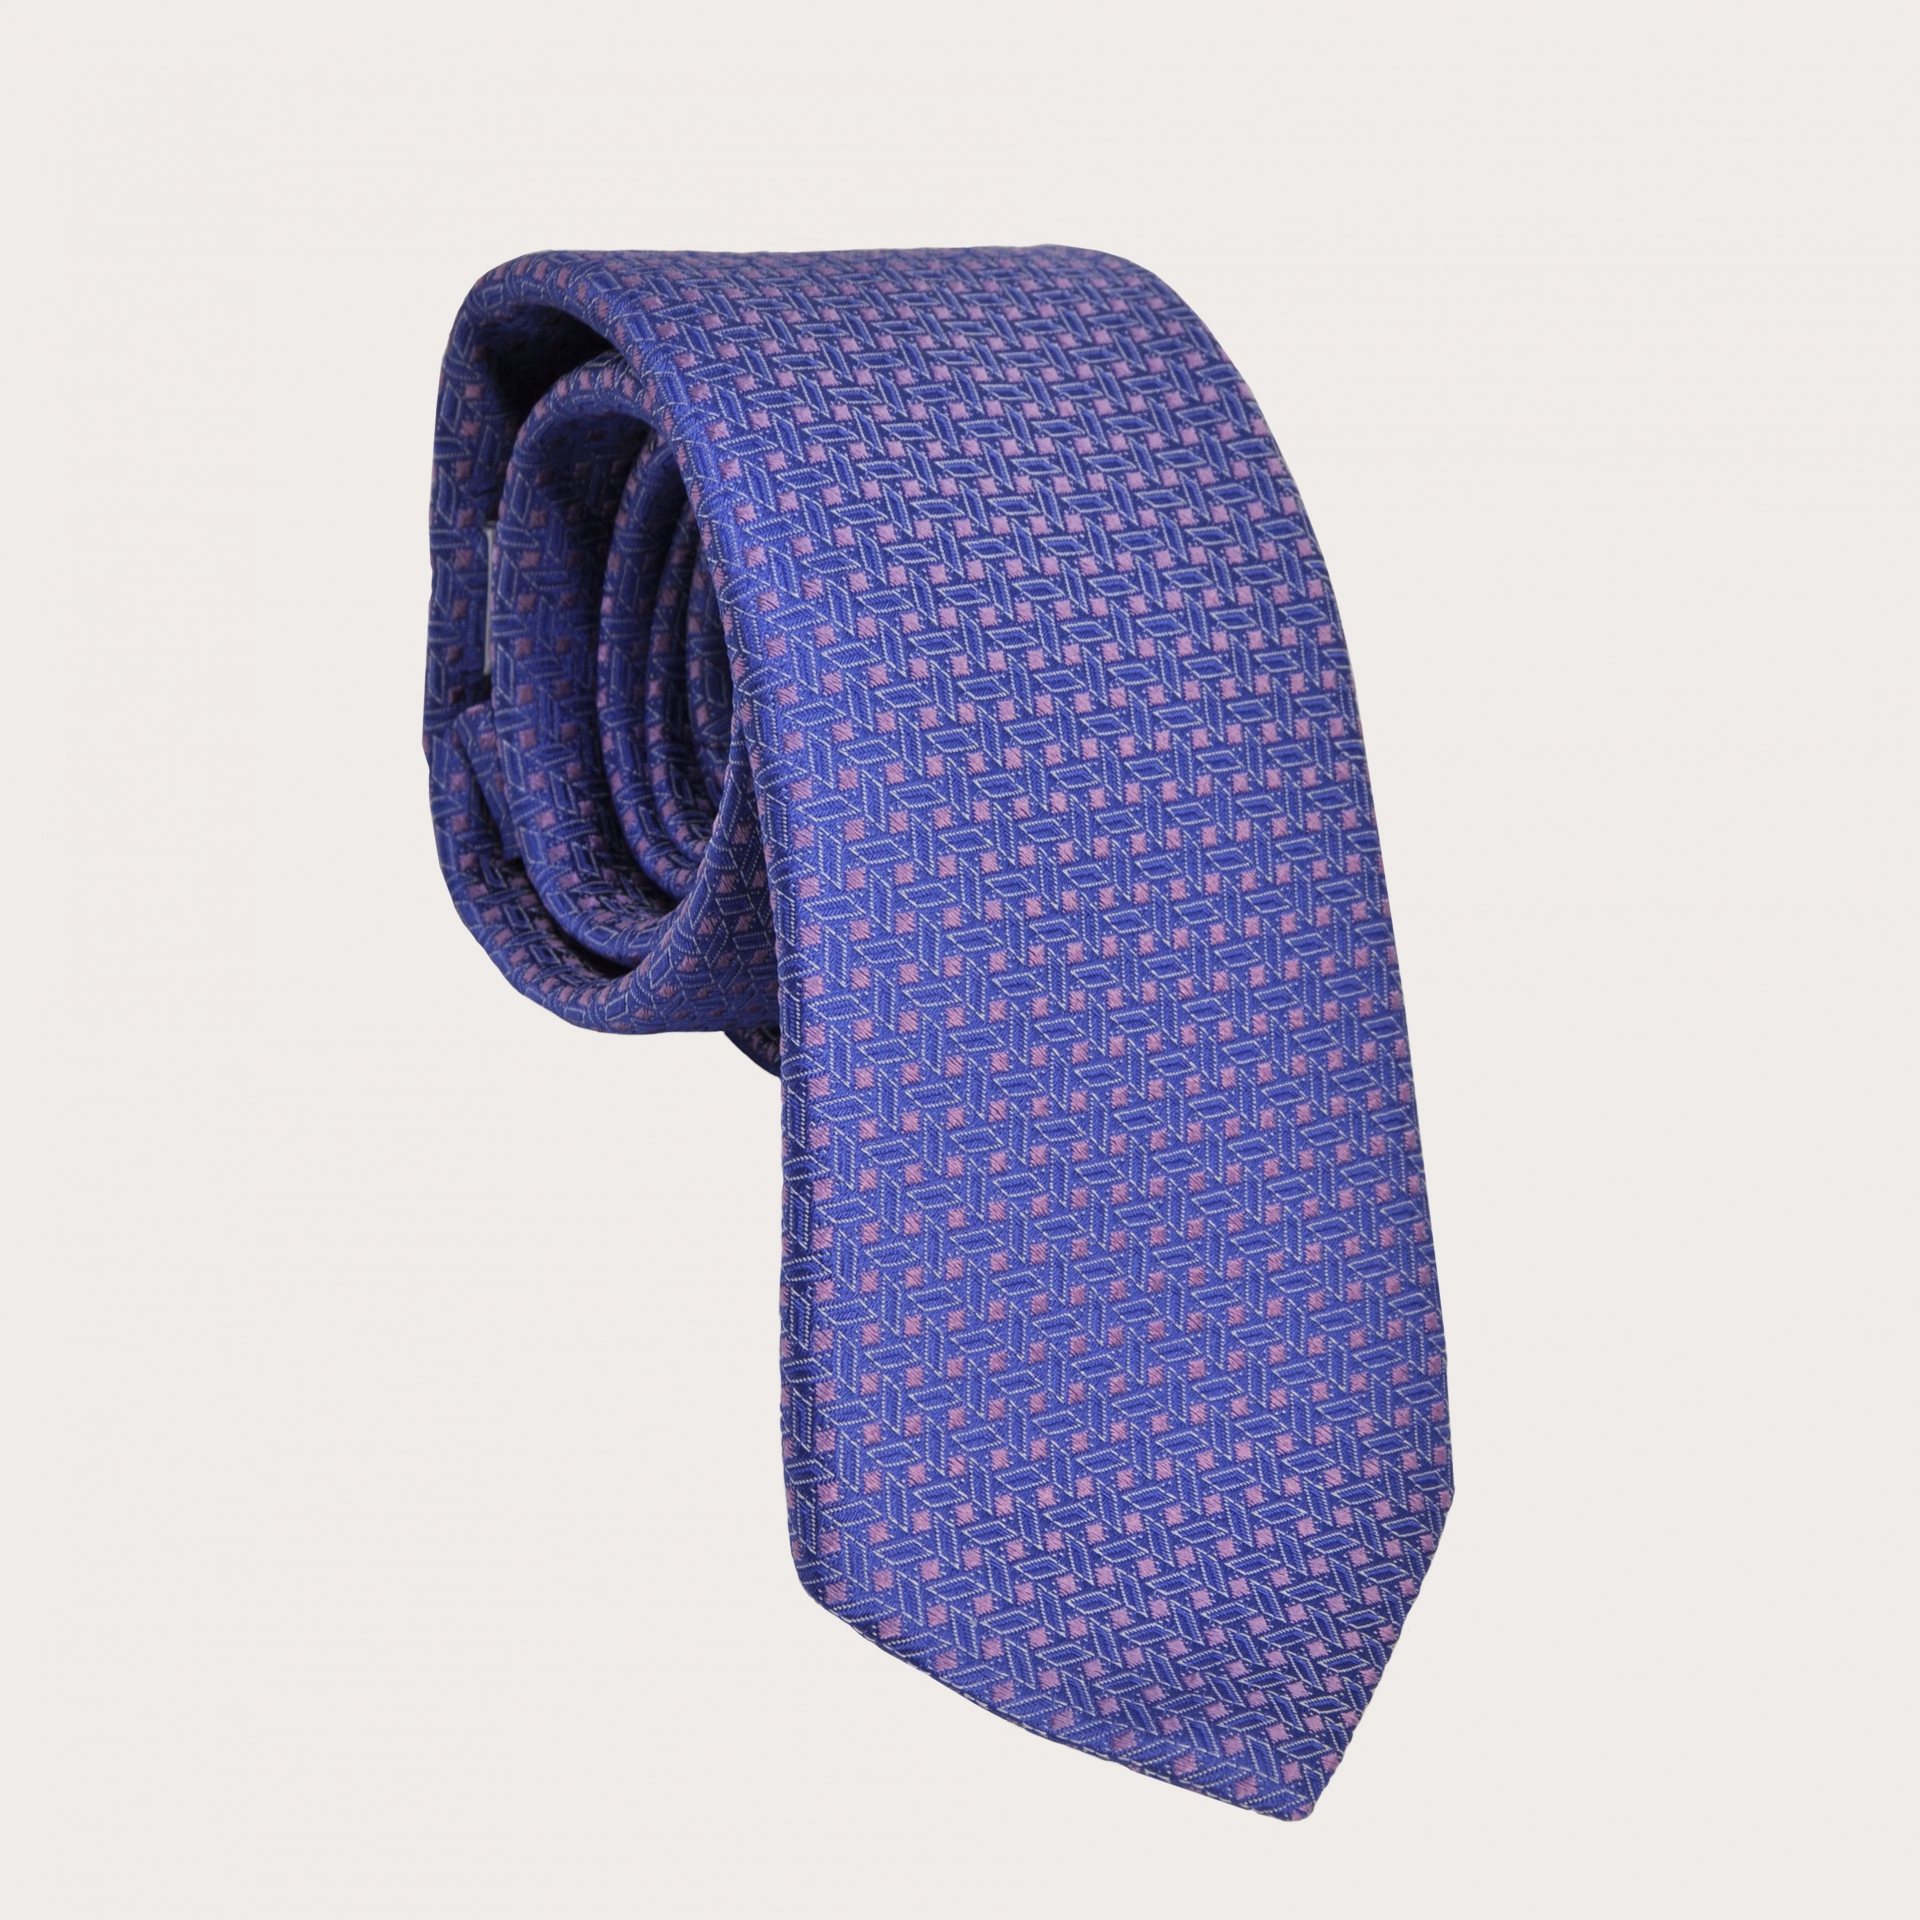 BRUCLE Cravate bleu clair et rose avec motif géométrique